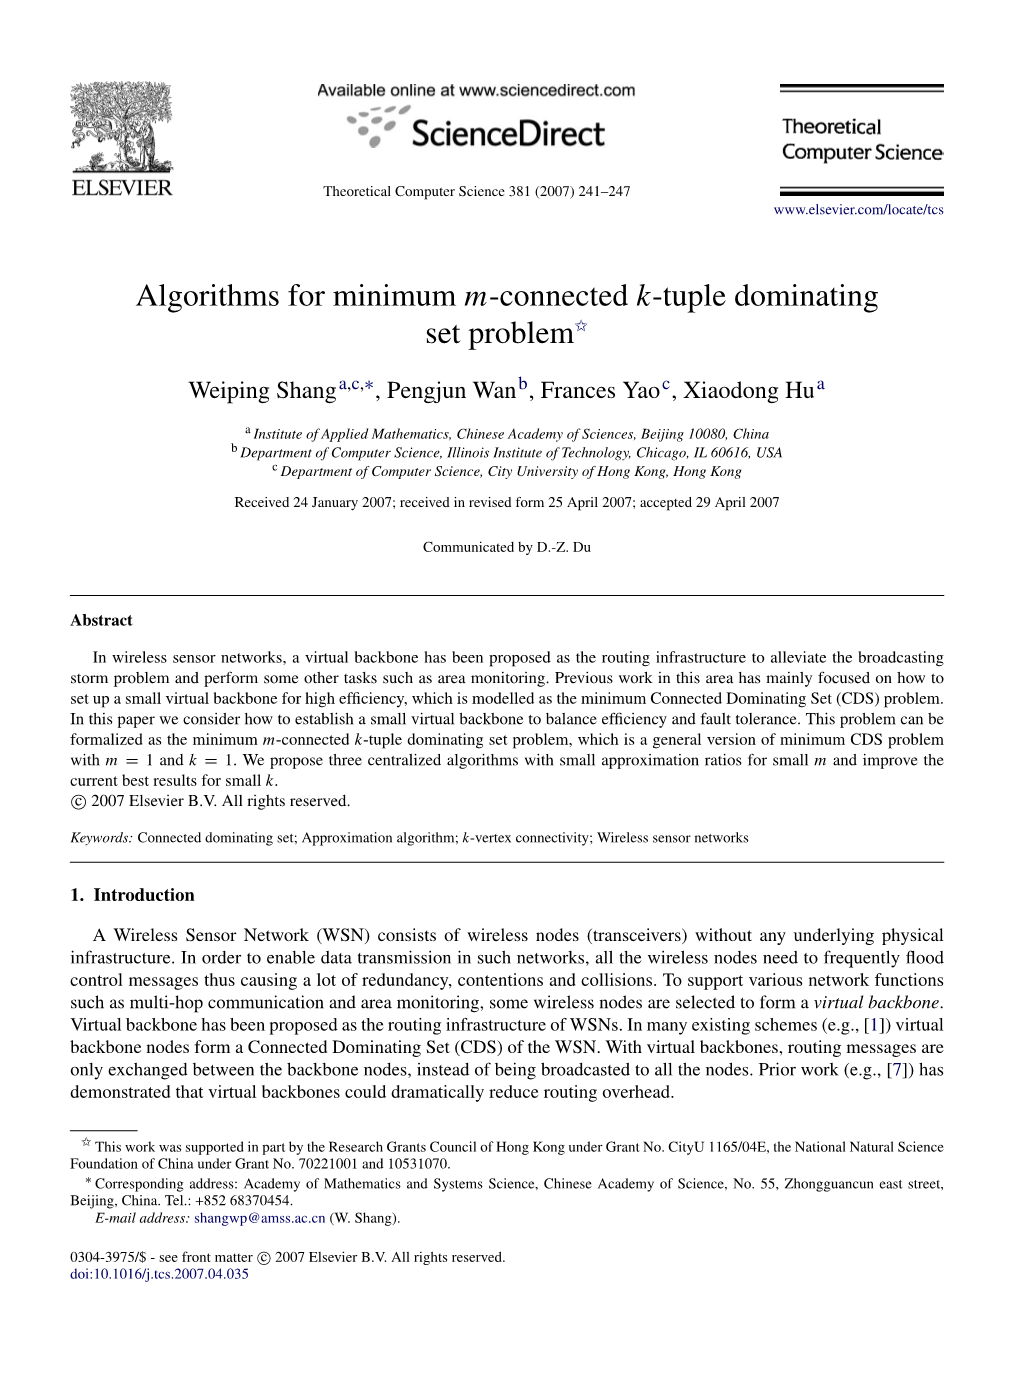 Algorithms for Minimum M-Connected K-Tuple Dominating Set Problem$